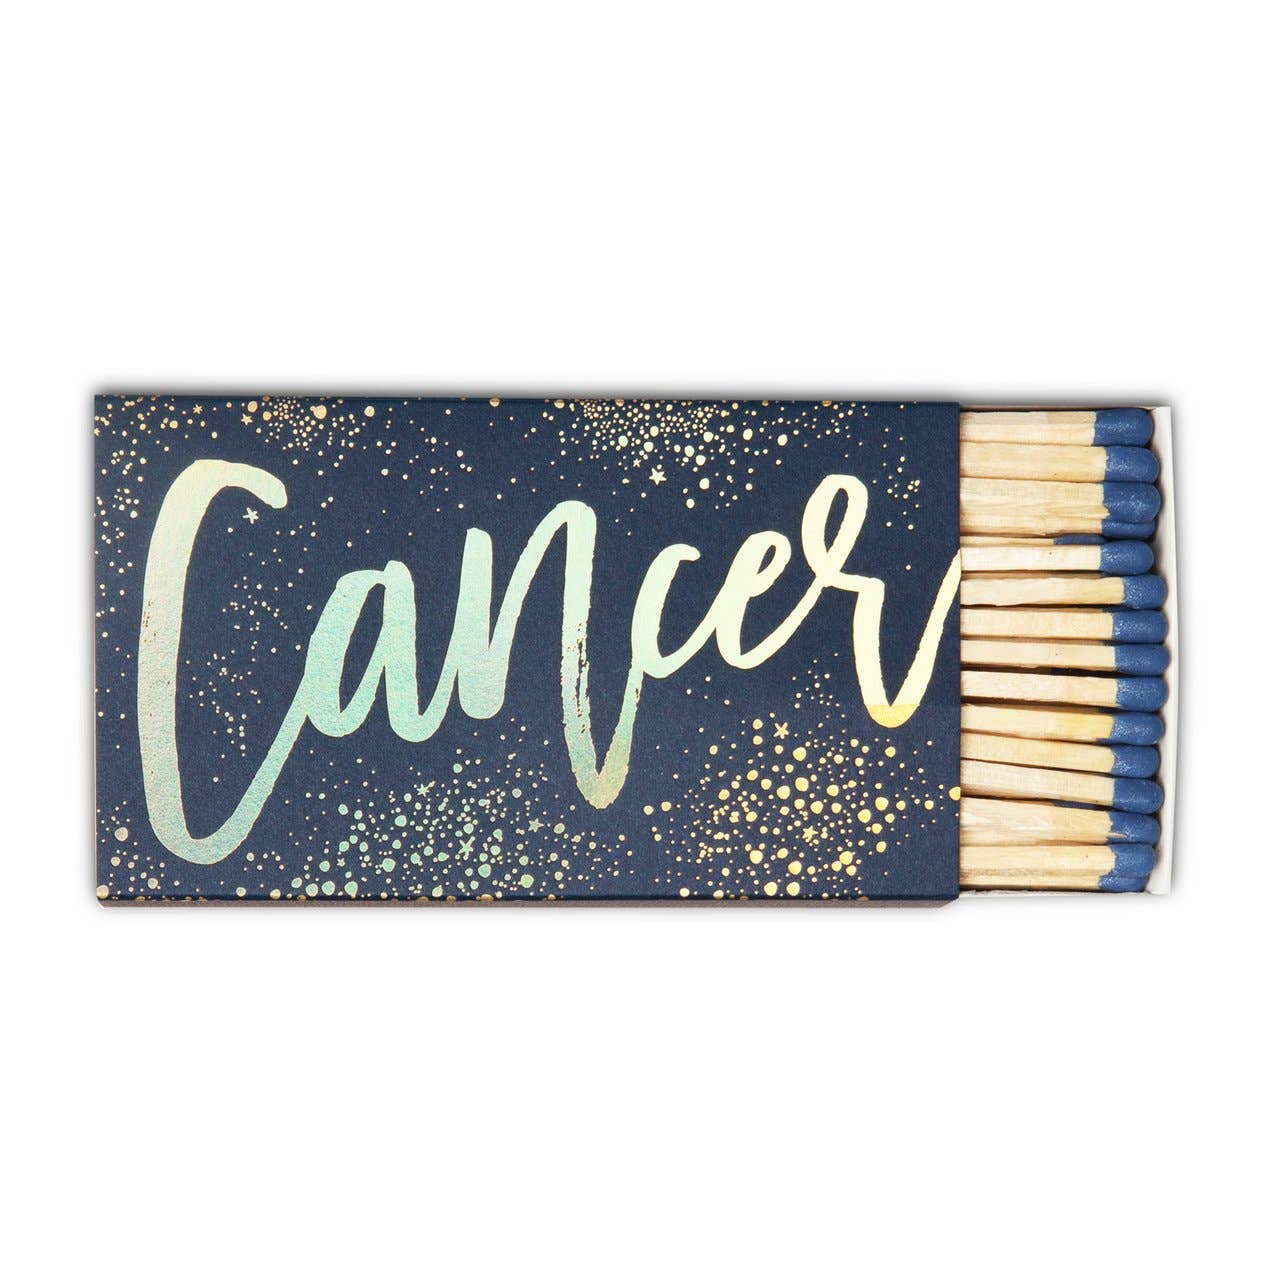 Cancer Cigar Matches